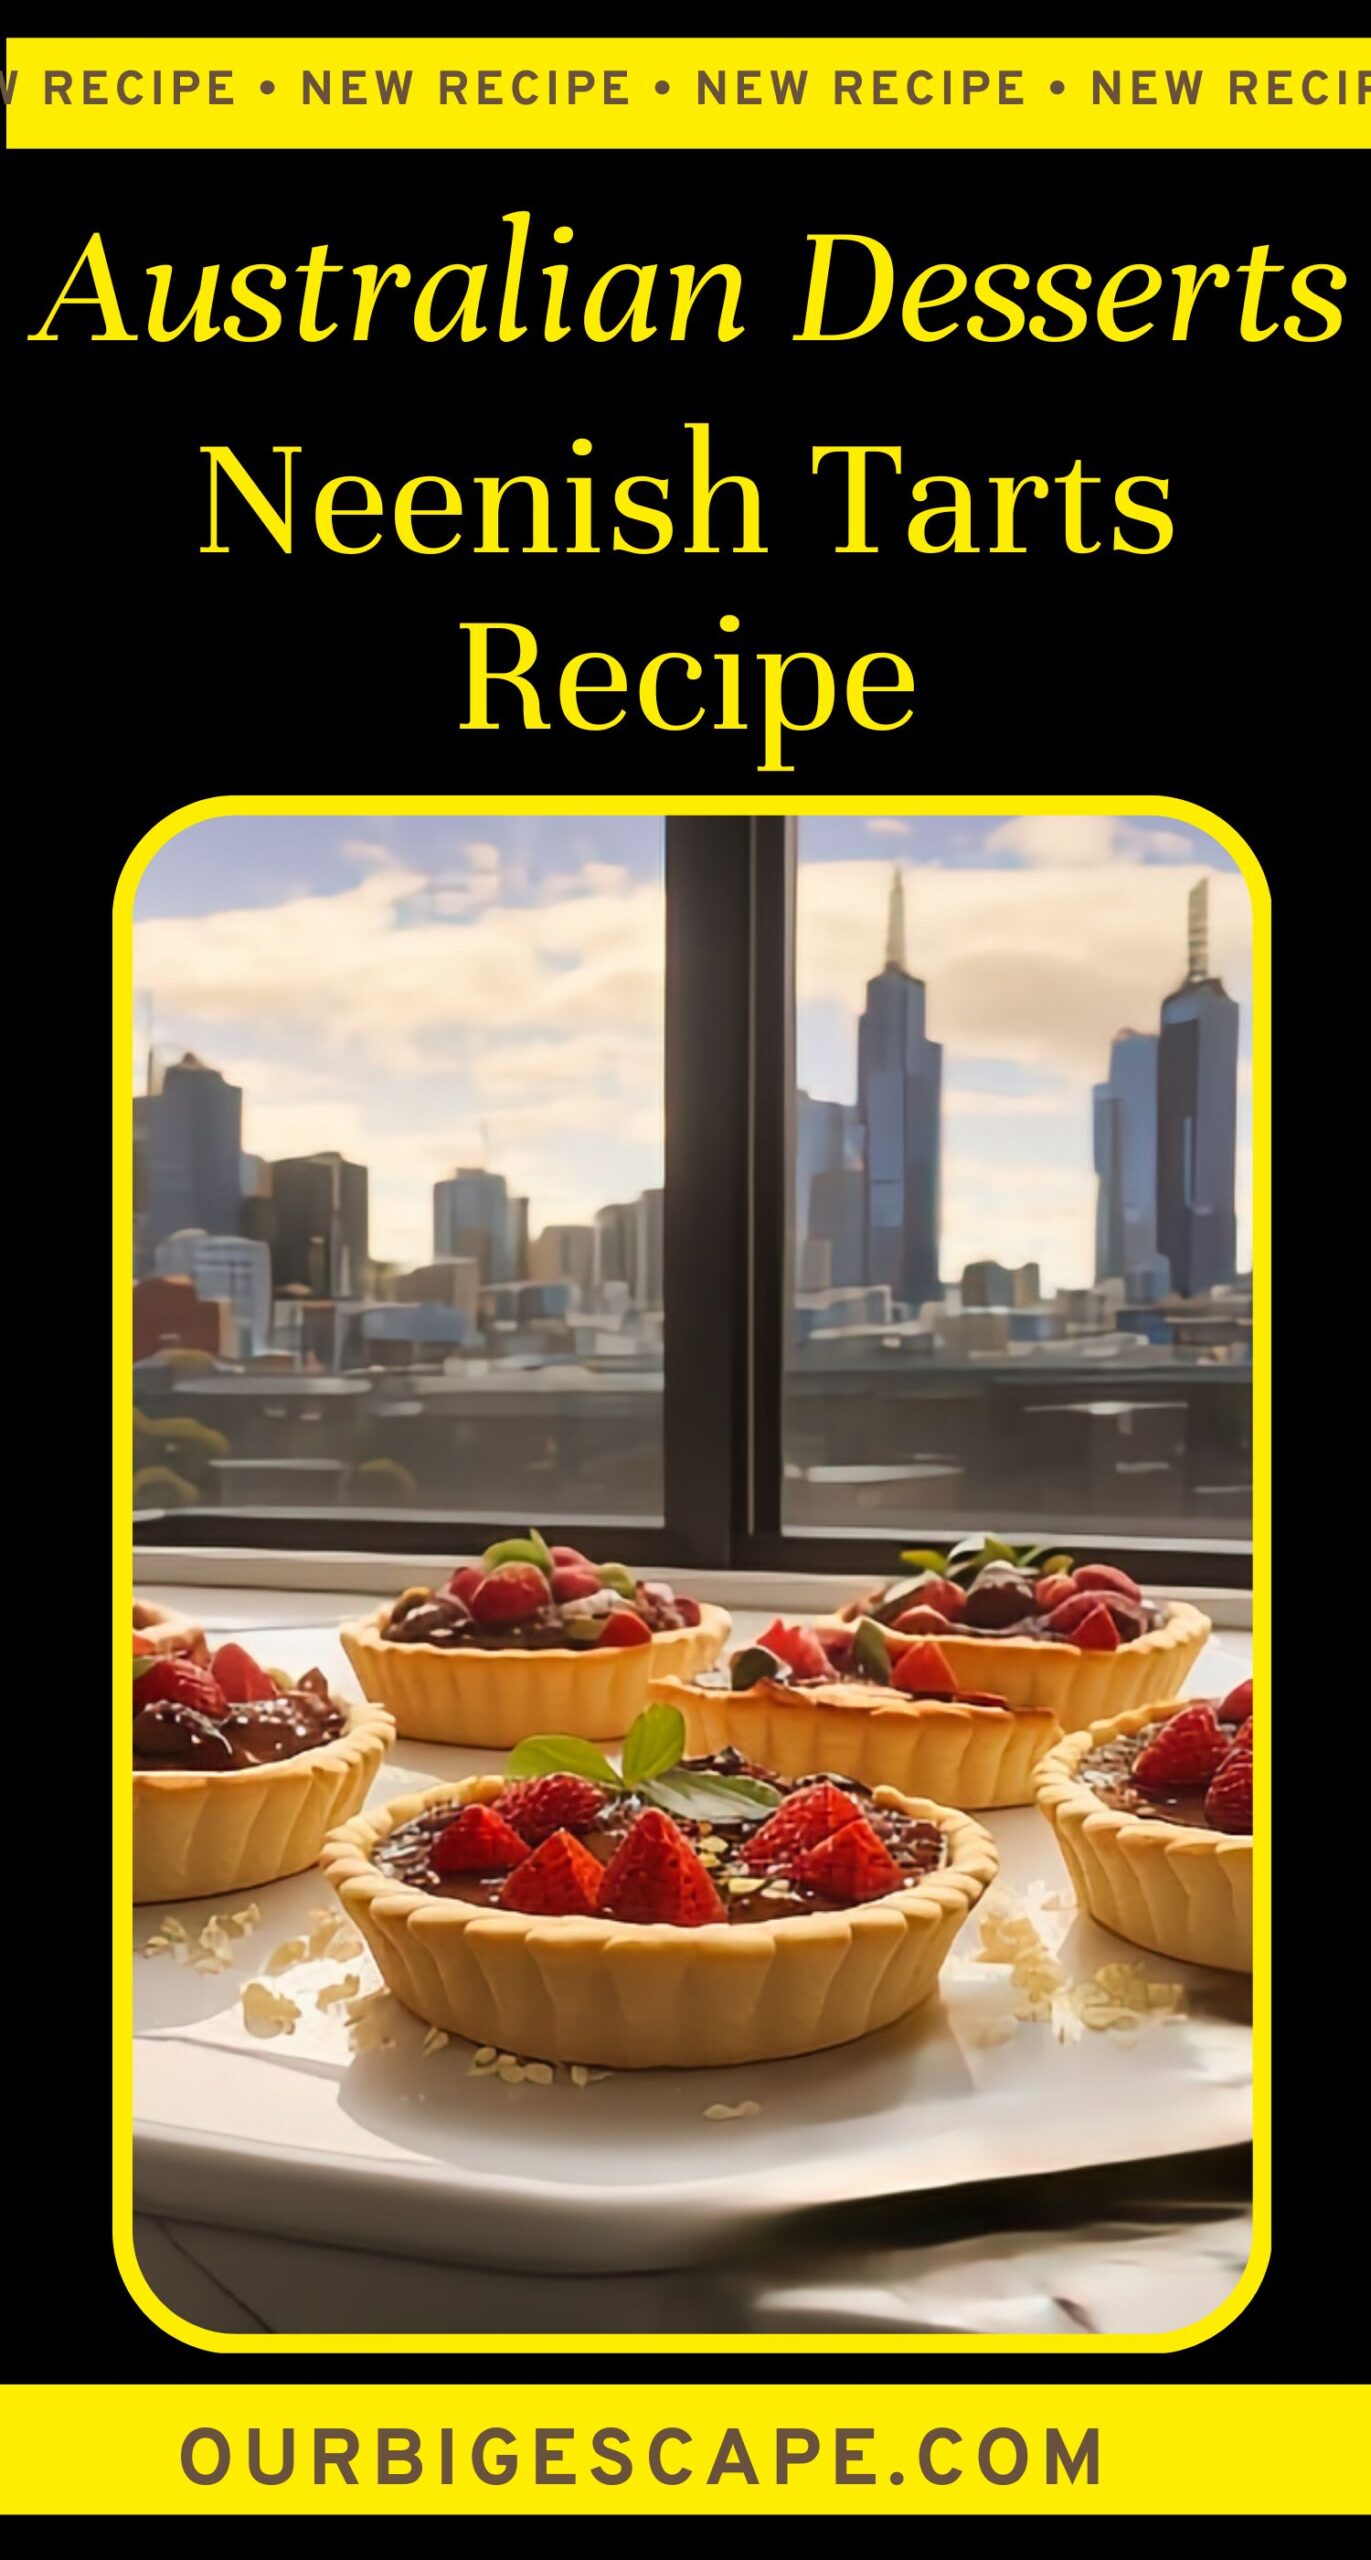 16. Australian Neenish Tarts Recipe